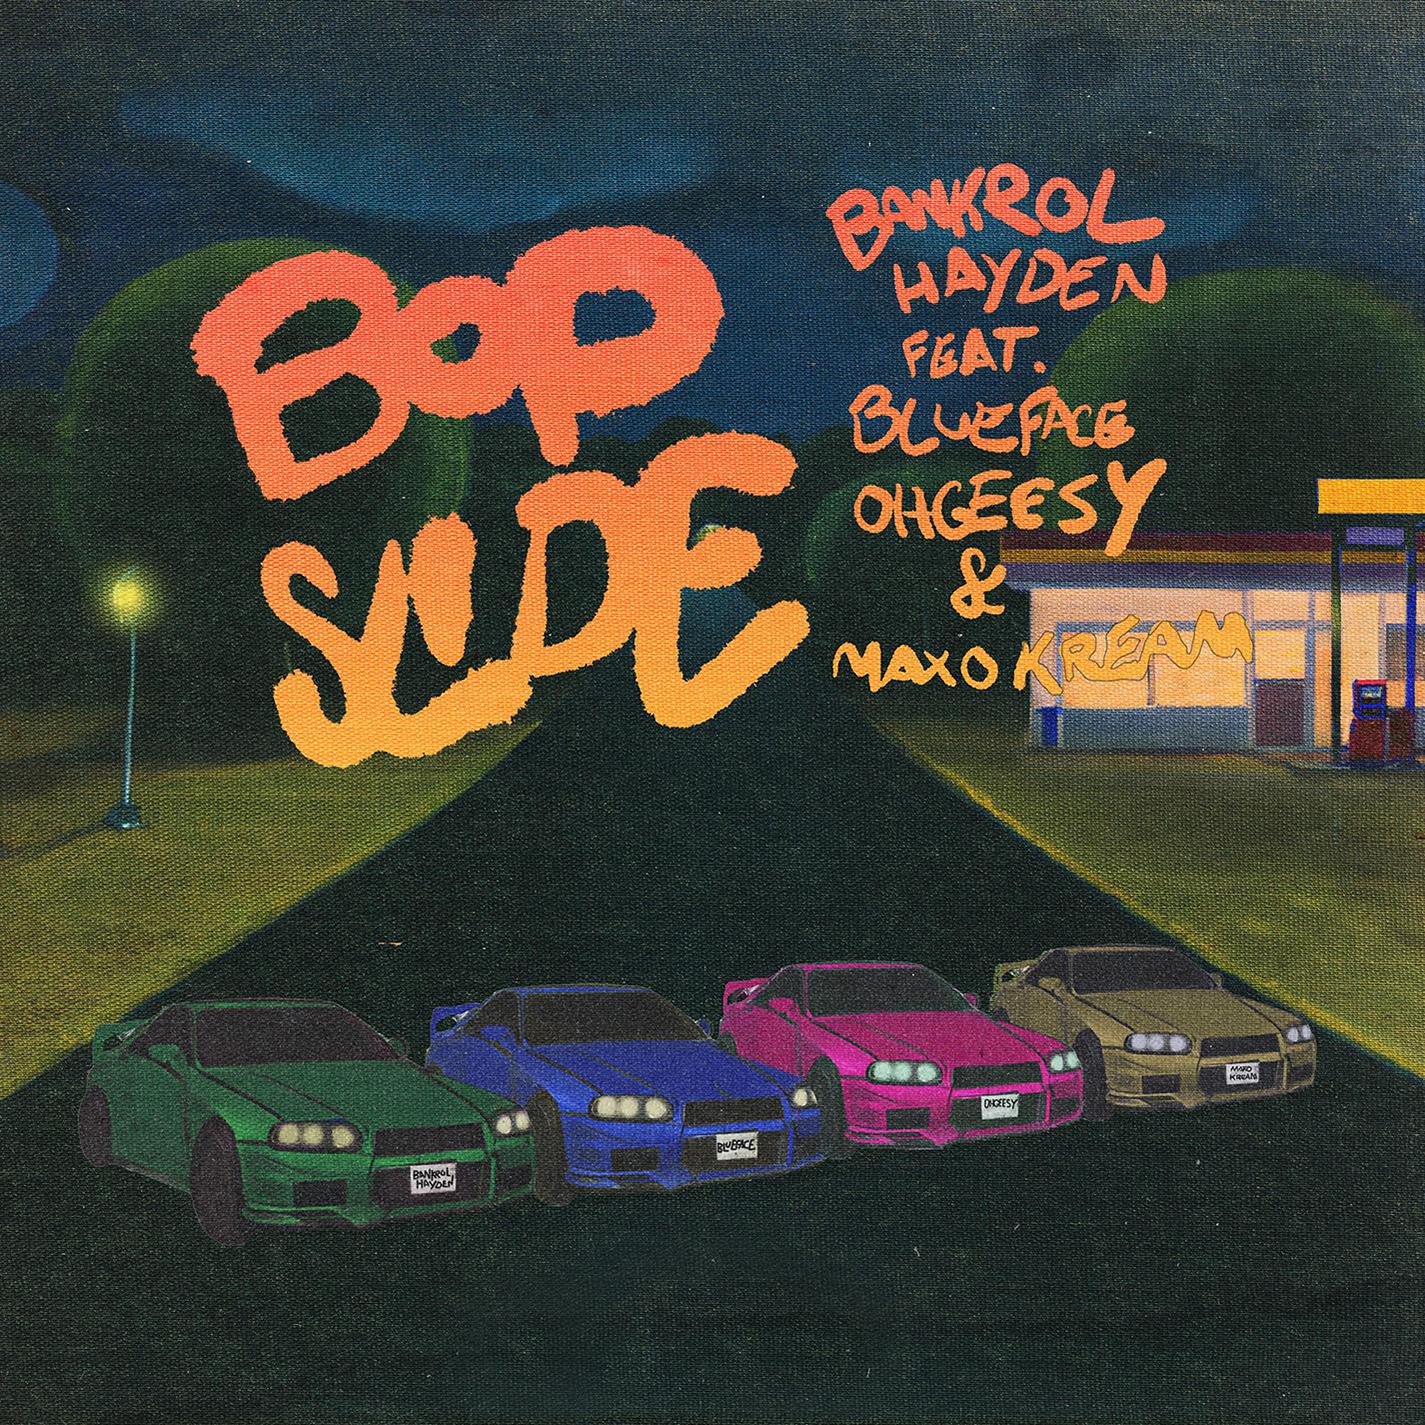 Bankrol Hayden - Bop Slide (feat. Blueface, OHGEESY & Maxo Kream)